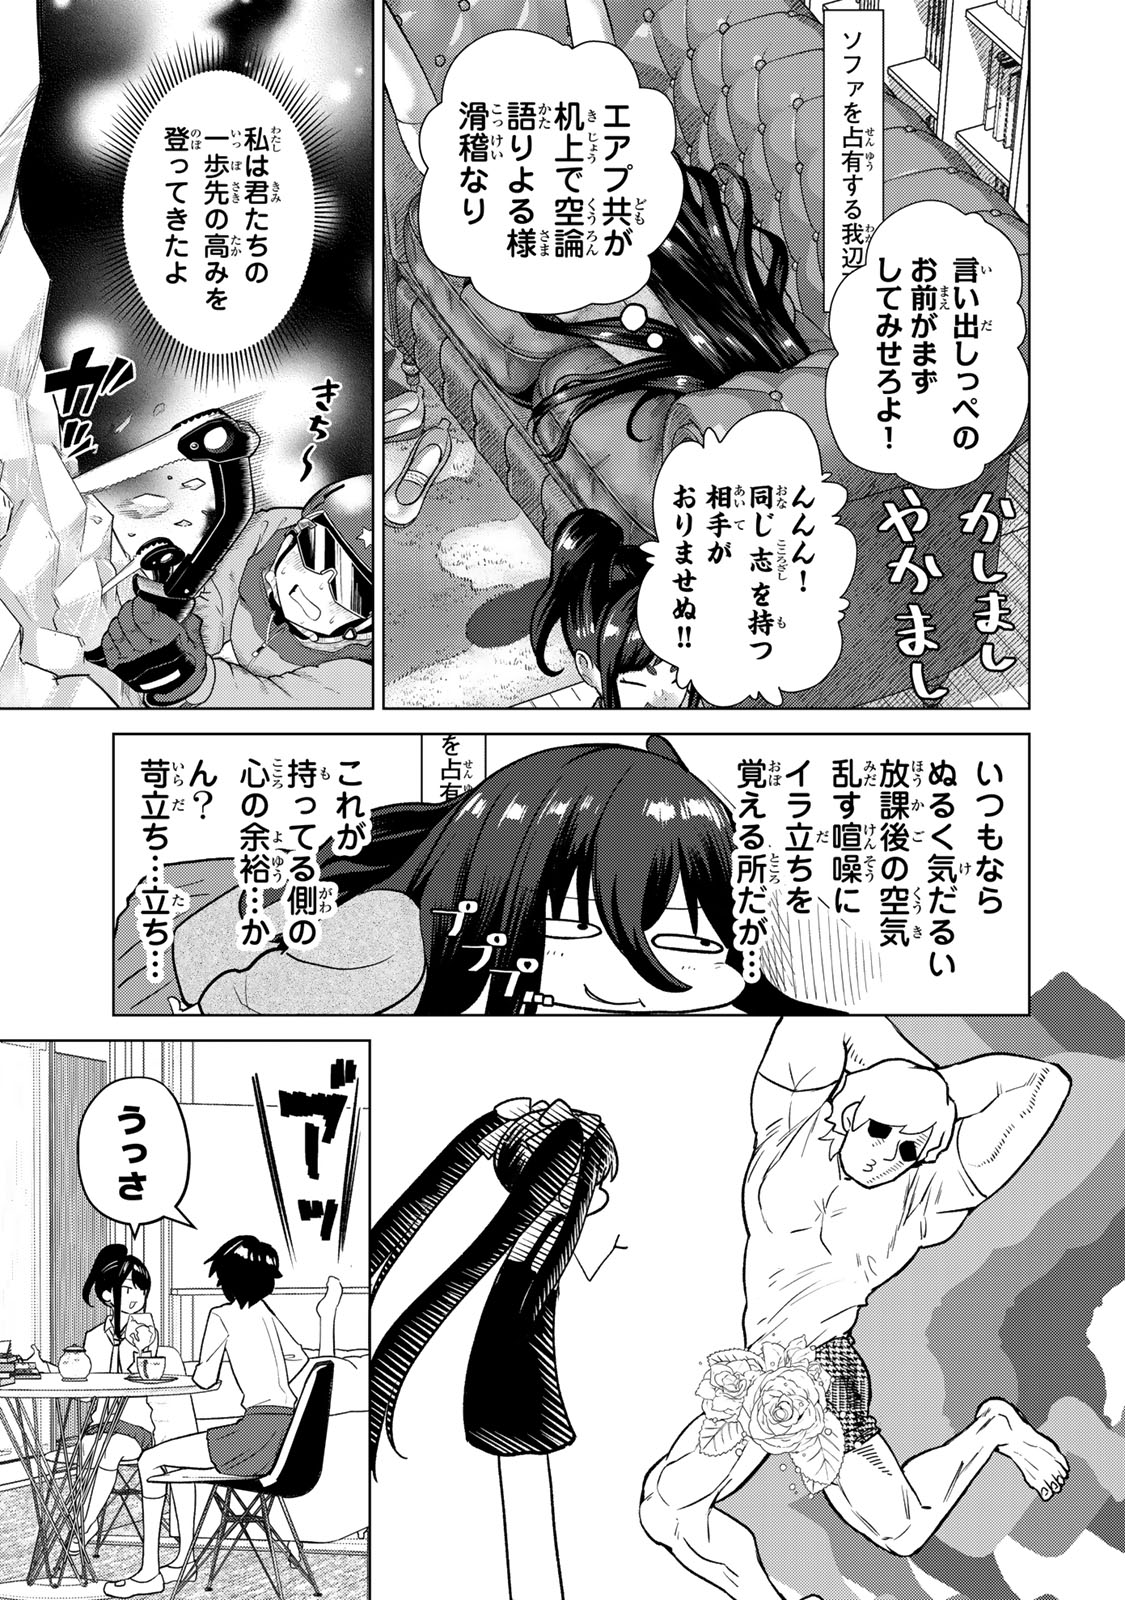 Yappa Ningen Yamete Seikai da wa - Chapter 2 - Page 3